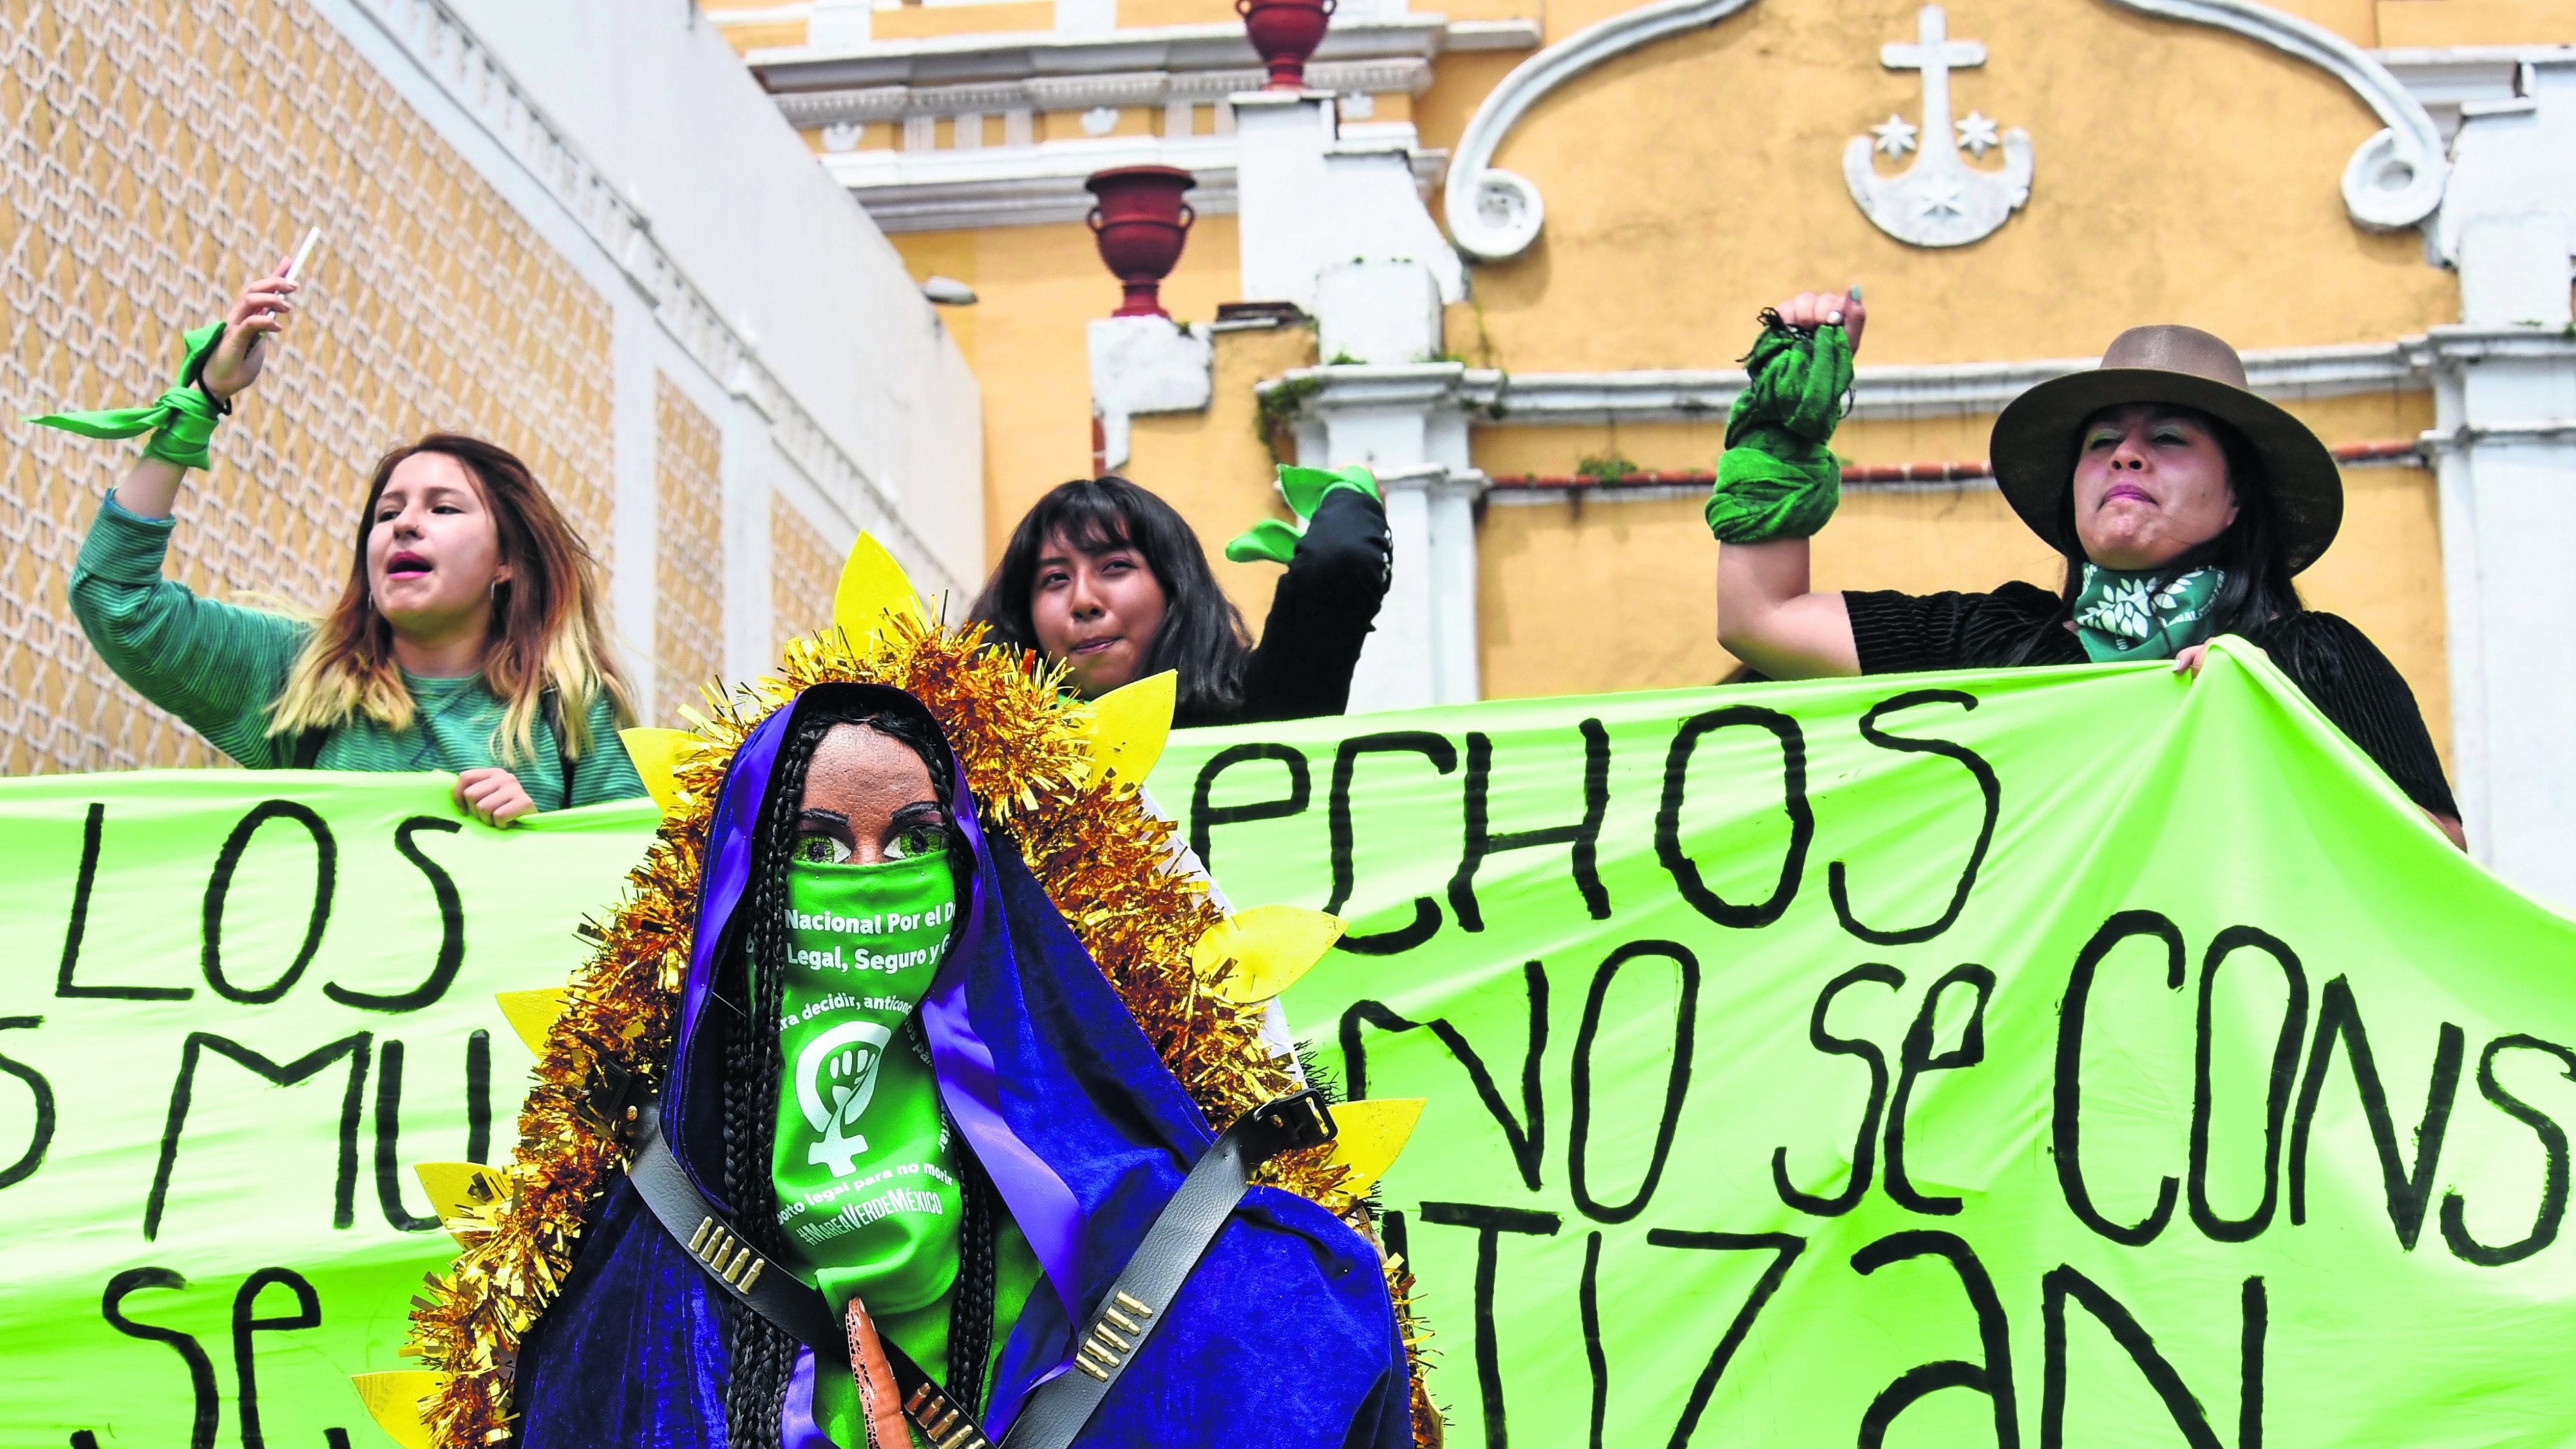 Marcha feminista pinta de verde Iglesias y virgen de Guadalupe, en Edomex |  El Gráfico Historias y noticias en un solo lugar